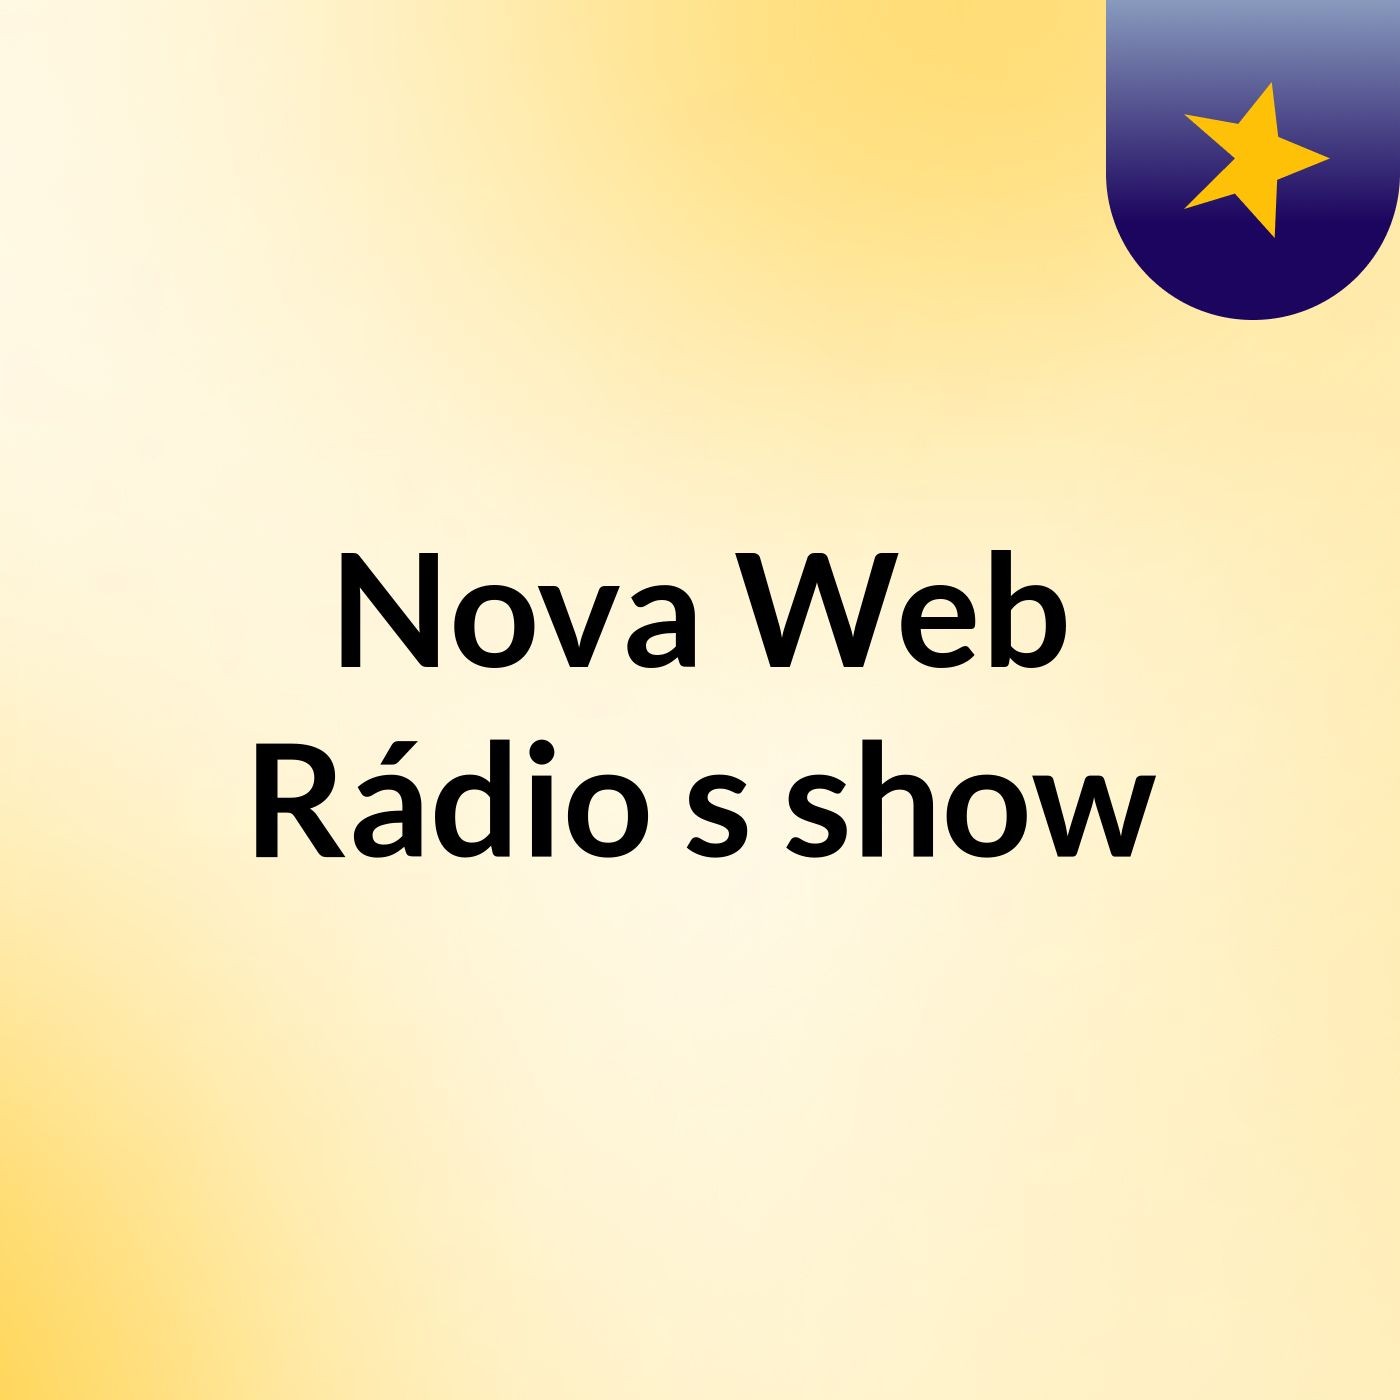 Nova Web Rádio's show